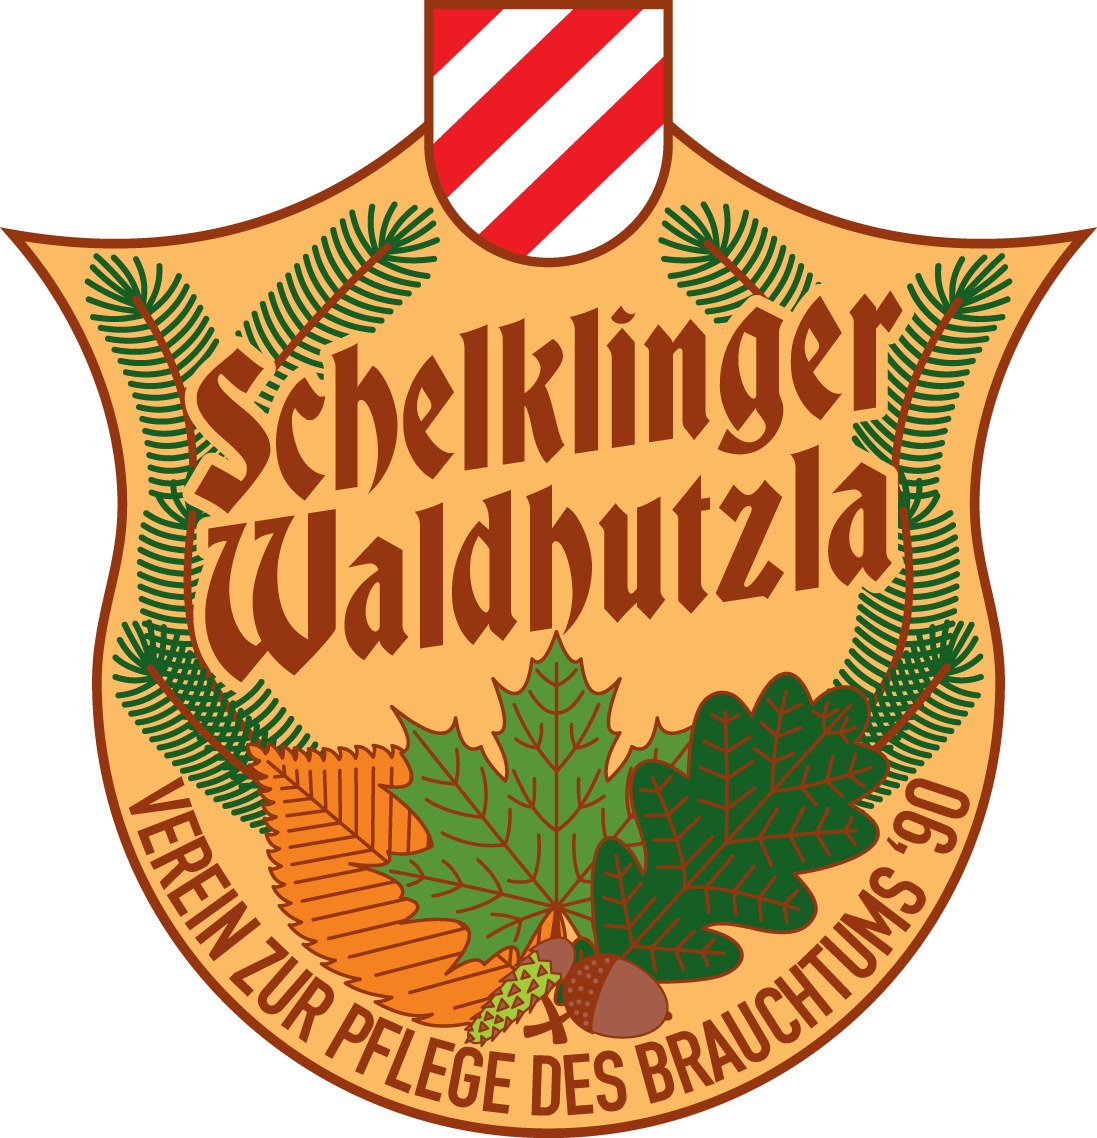 VzPdB e.V. Schelklinger Waldhutzla